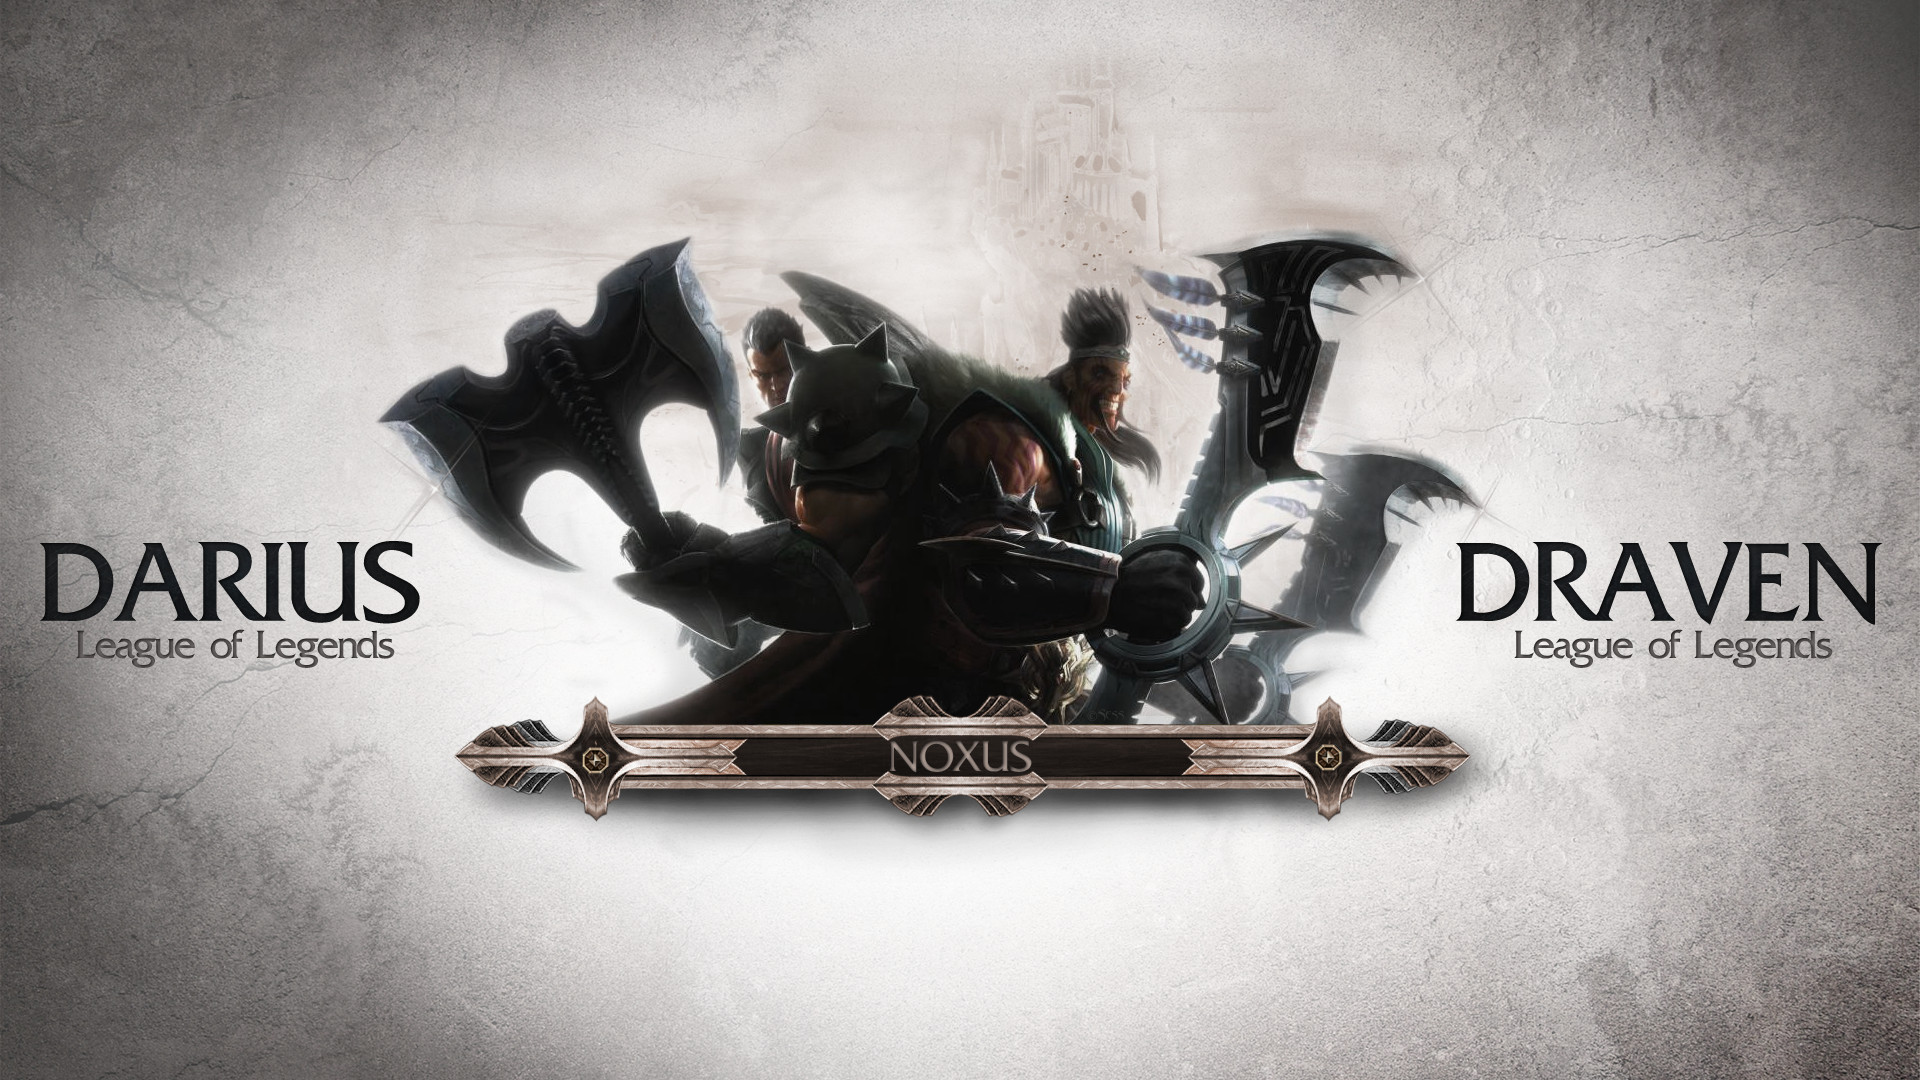 1920x1080 Darius and Draven - League of Legends HD Wallpaper  Darius ...